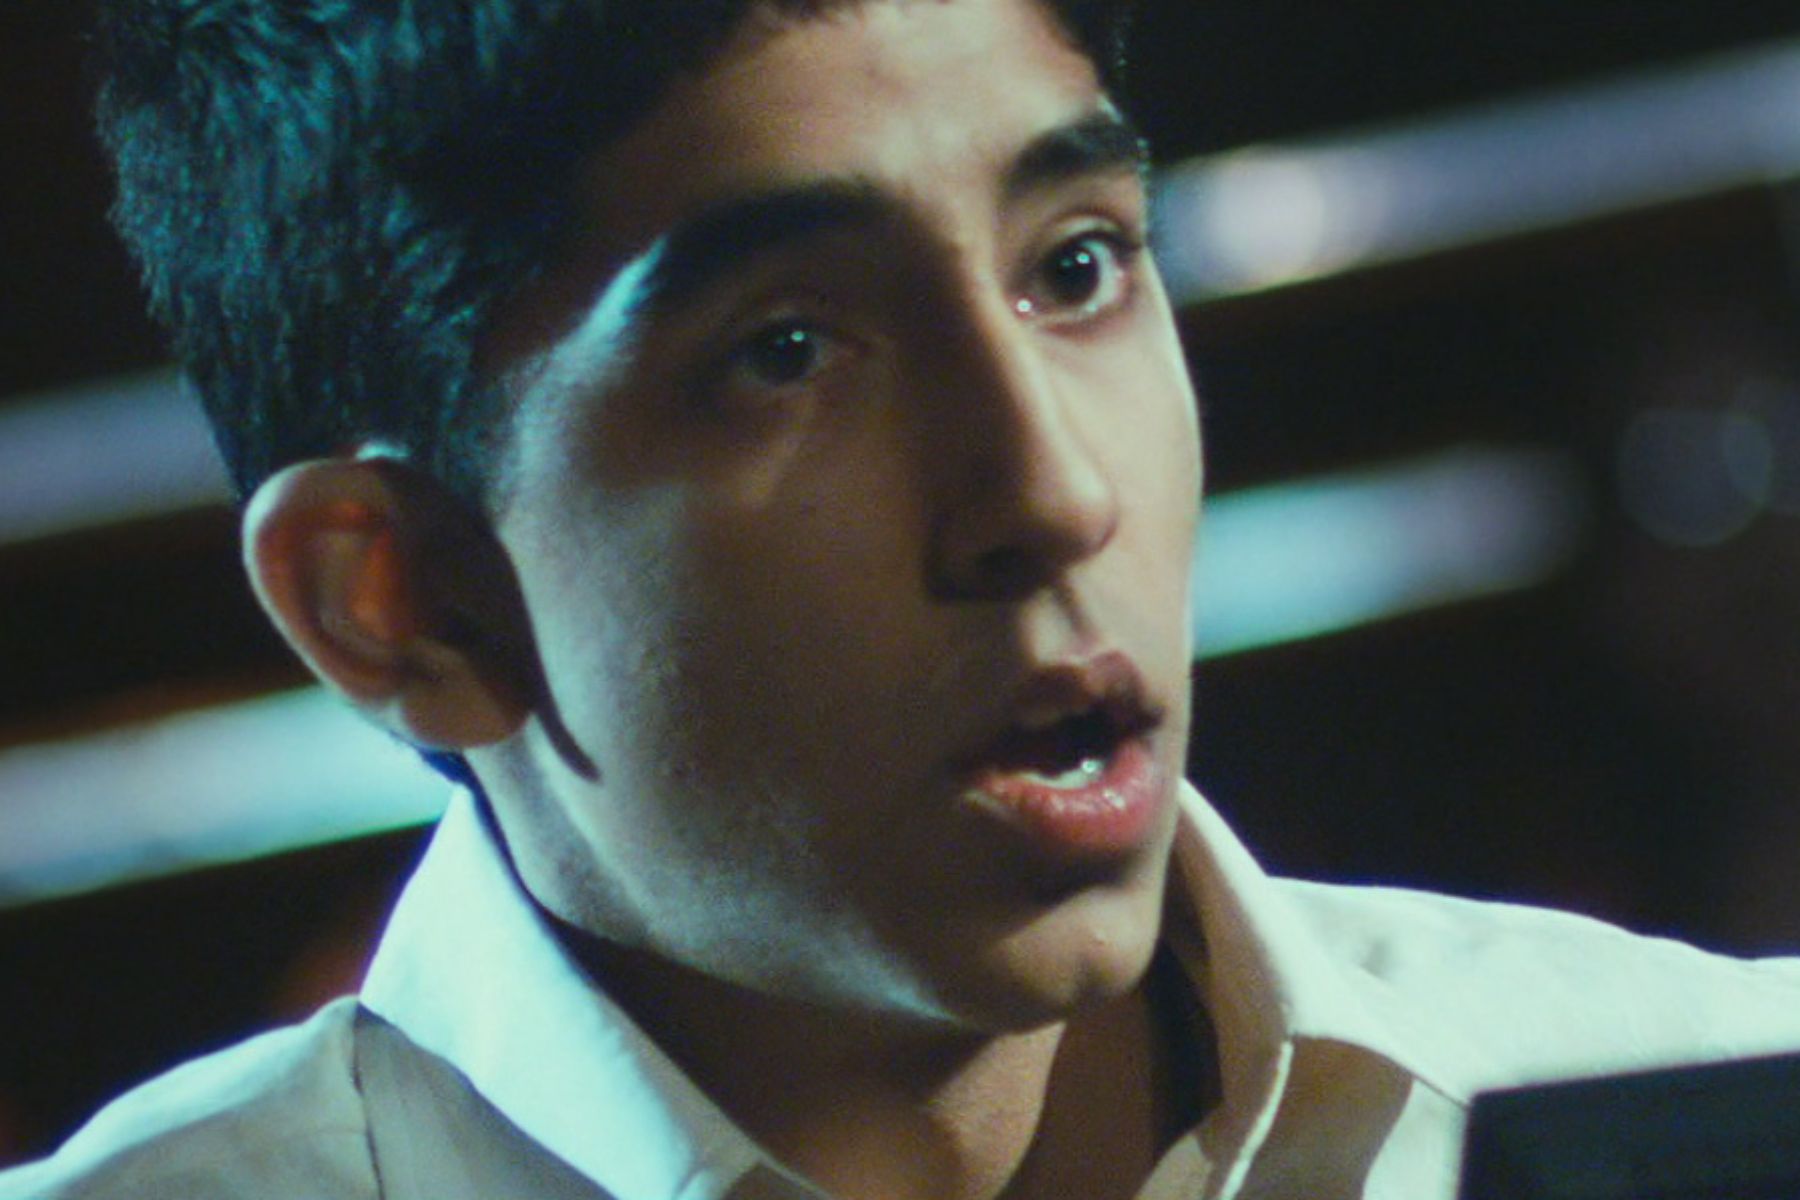 Slumdog Millionaire (2009)